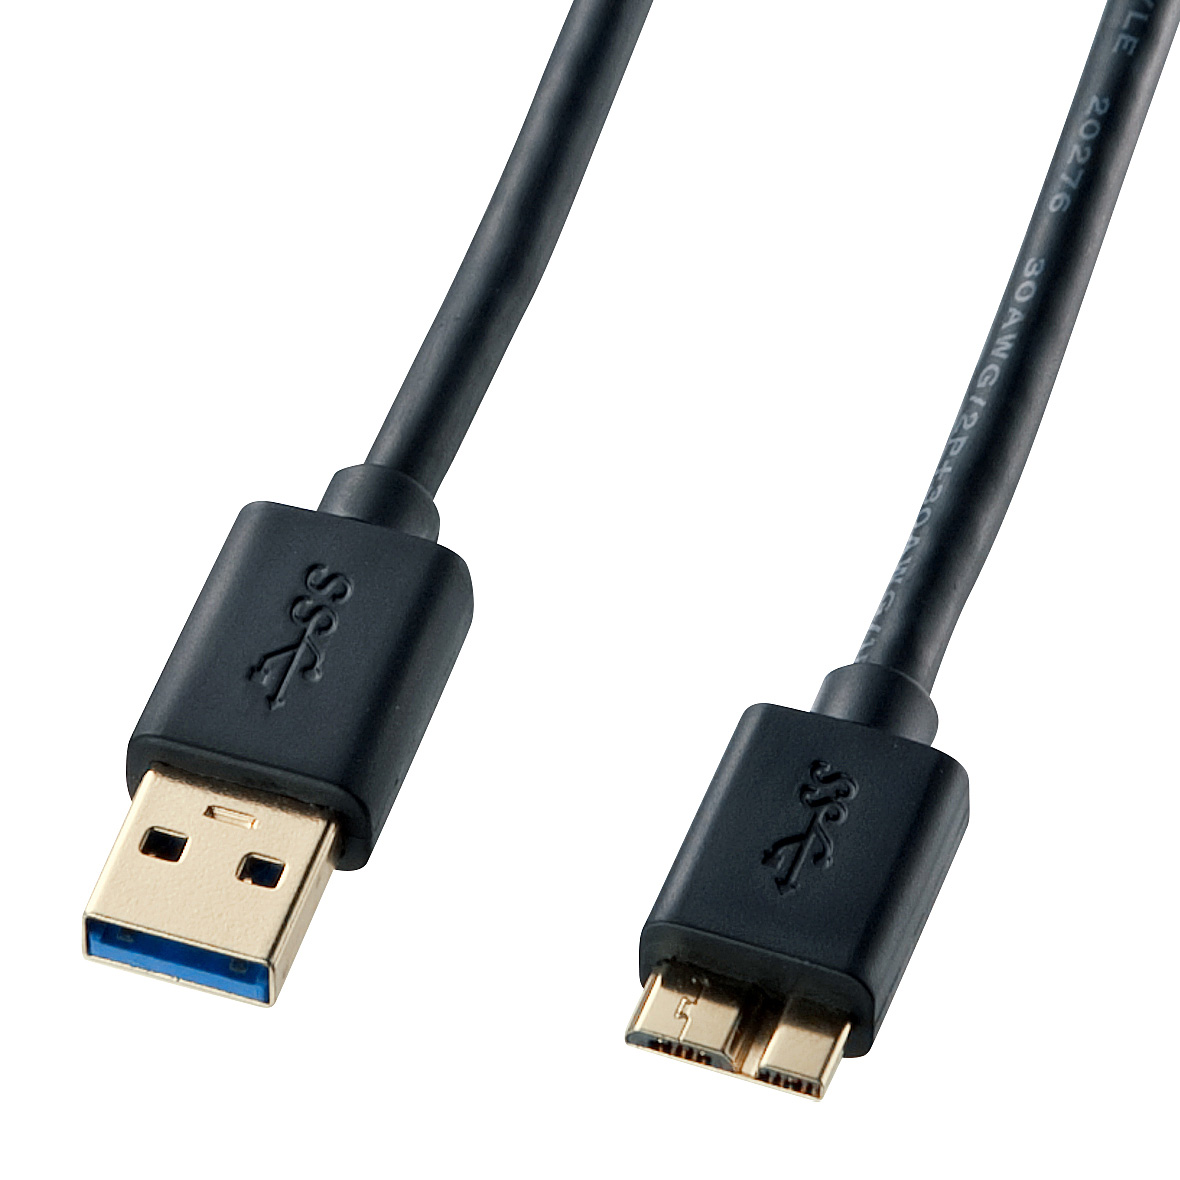 對應USB 3.0/3.1的Micro電纜線